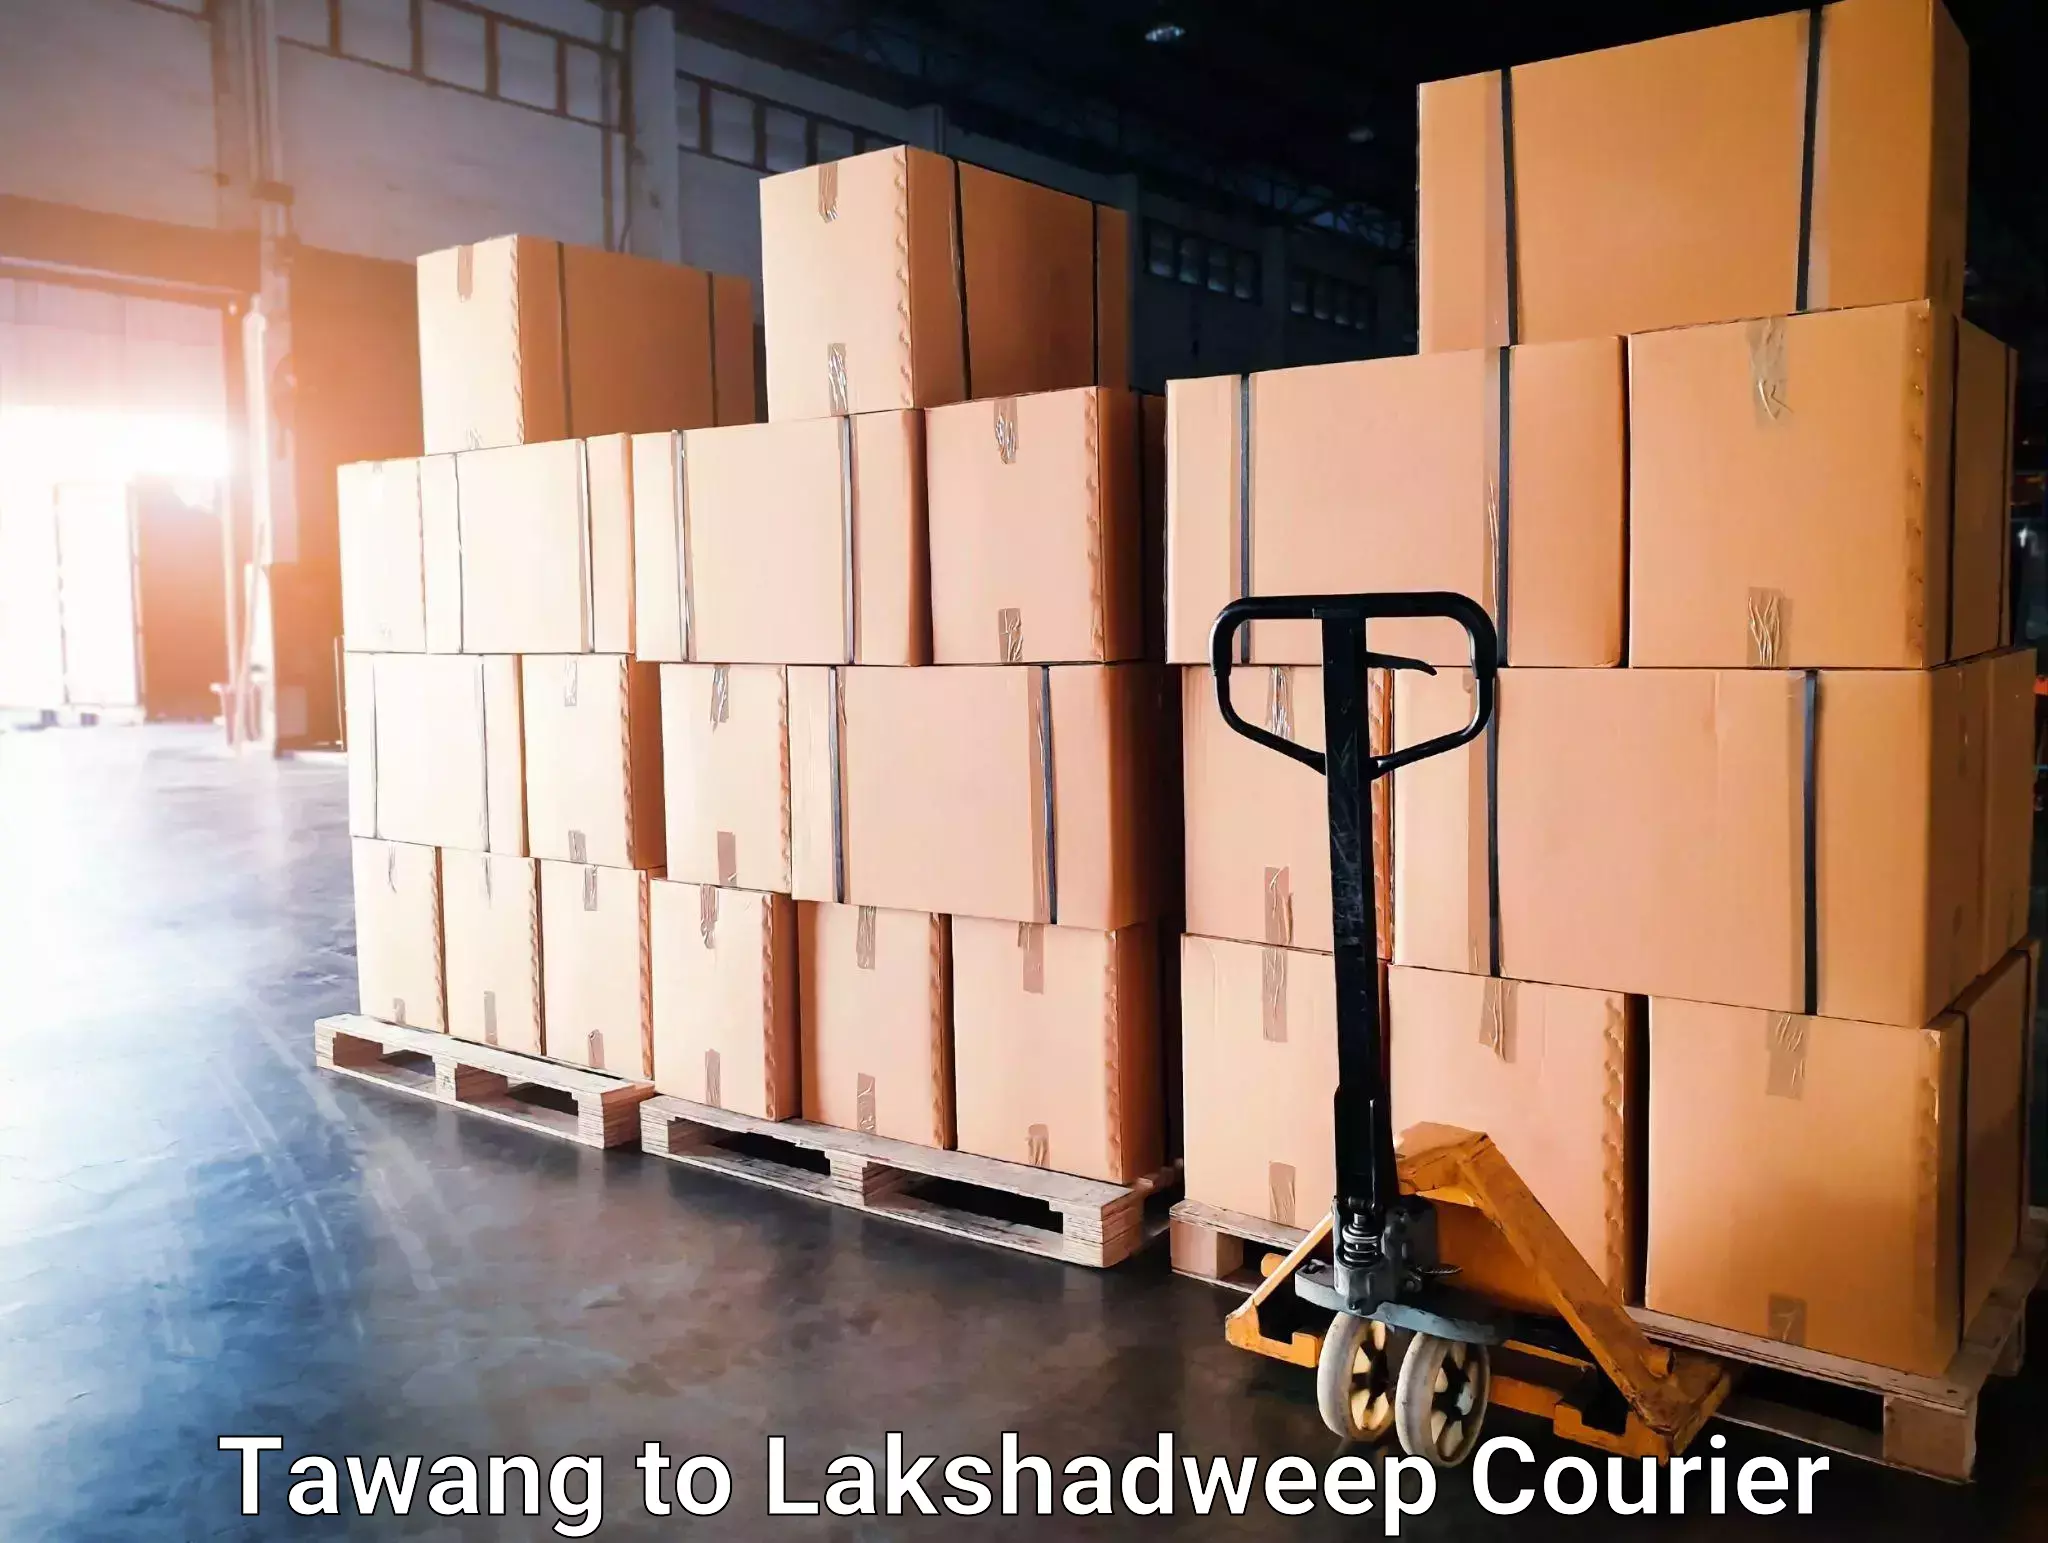 Customer-centric shipping Tawang to Lakshadweep